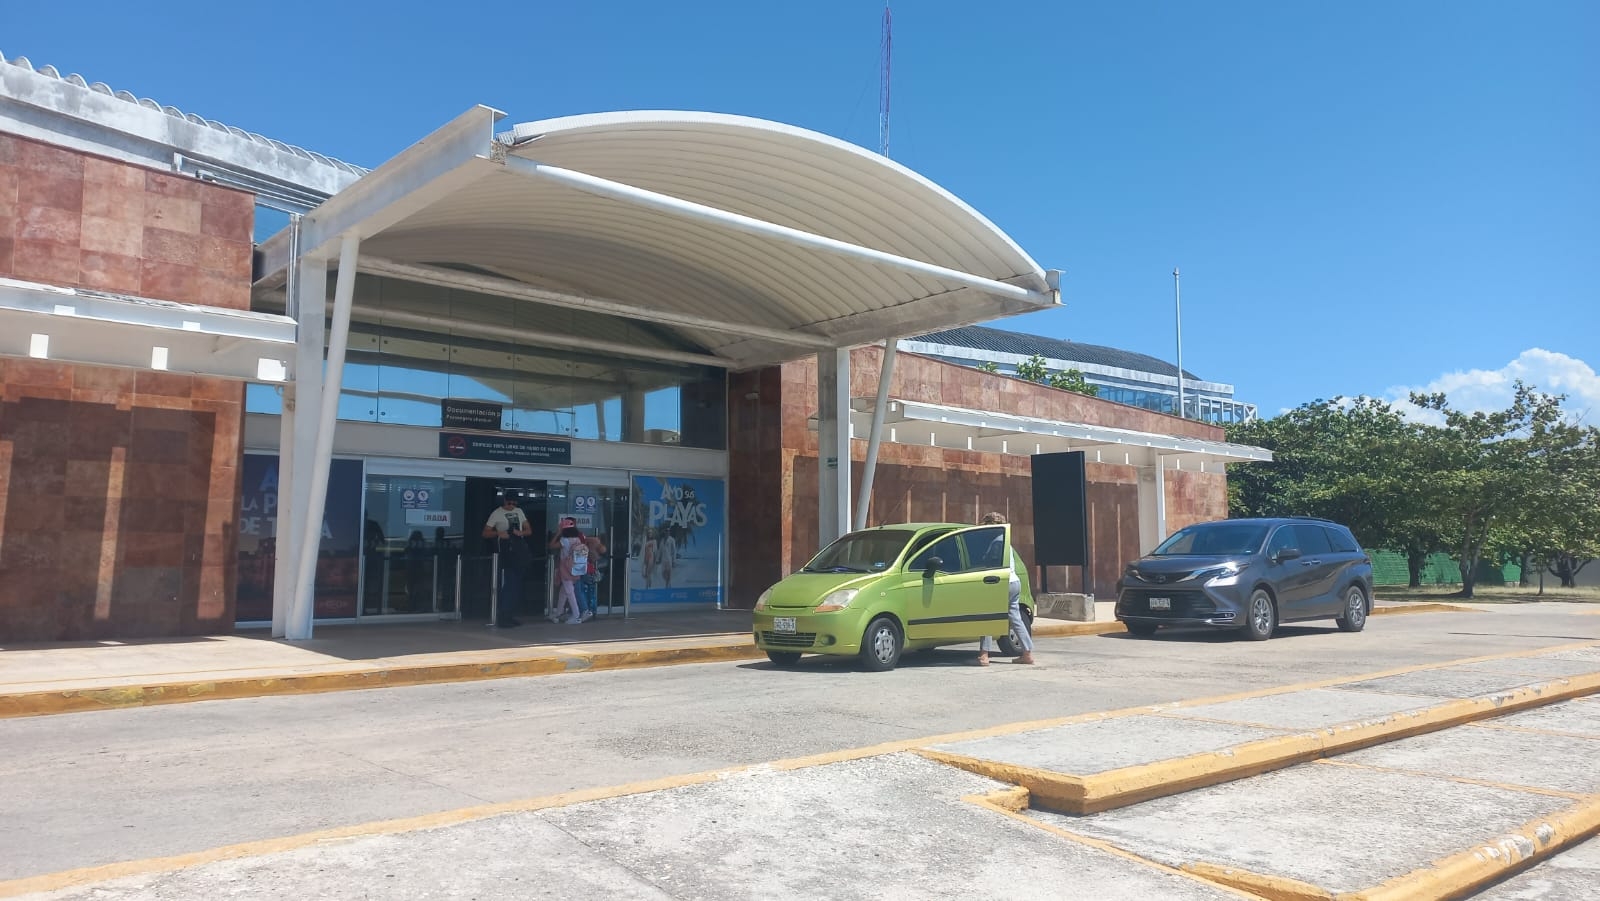 182 mil 645 kilogramos movilizados en Aeropuertos de Campeche